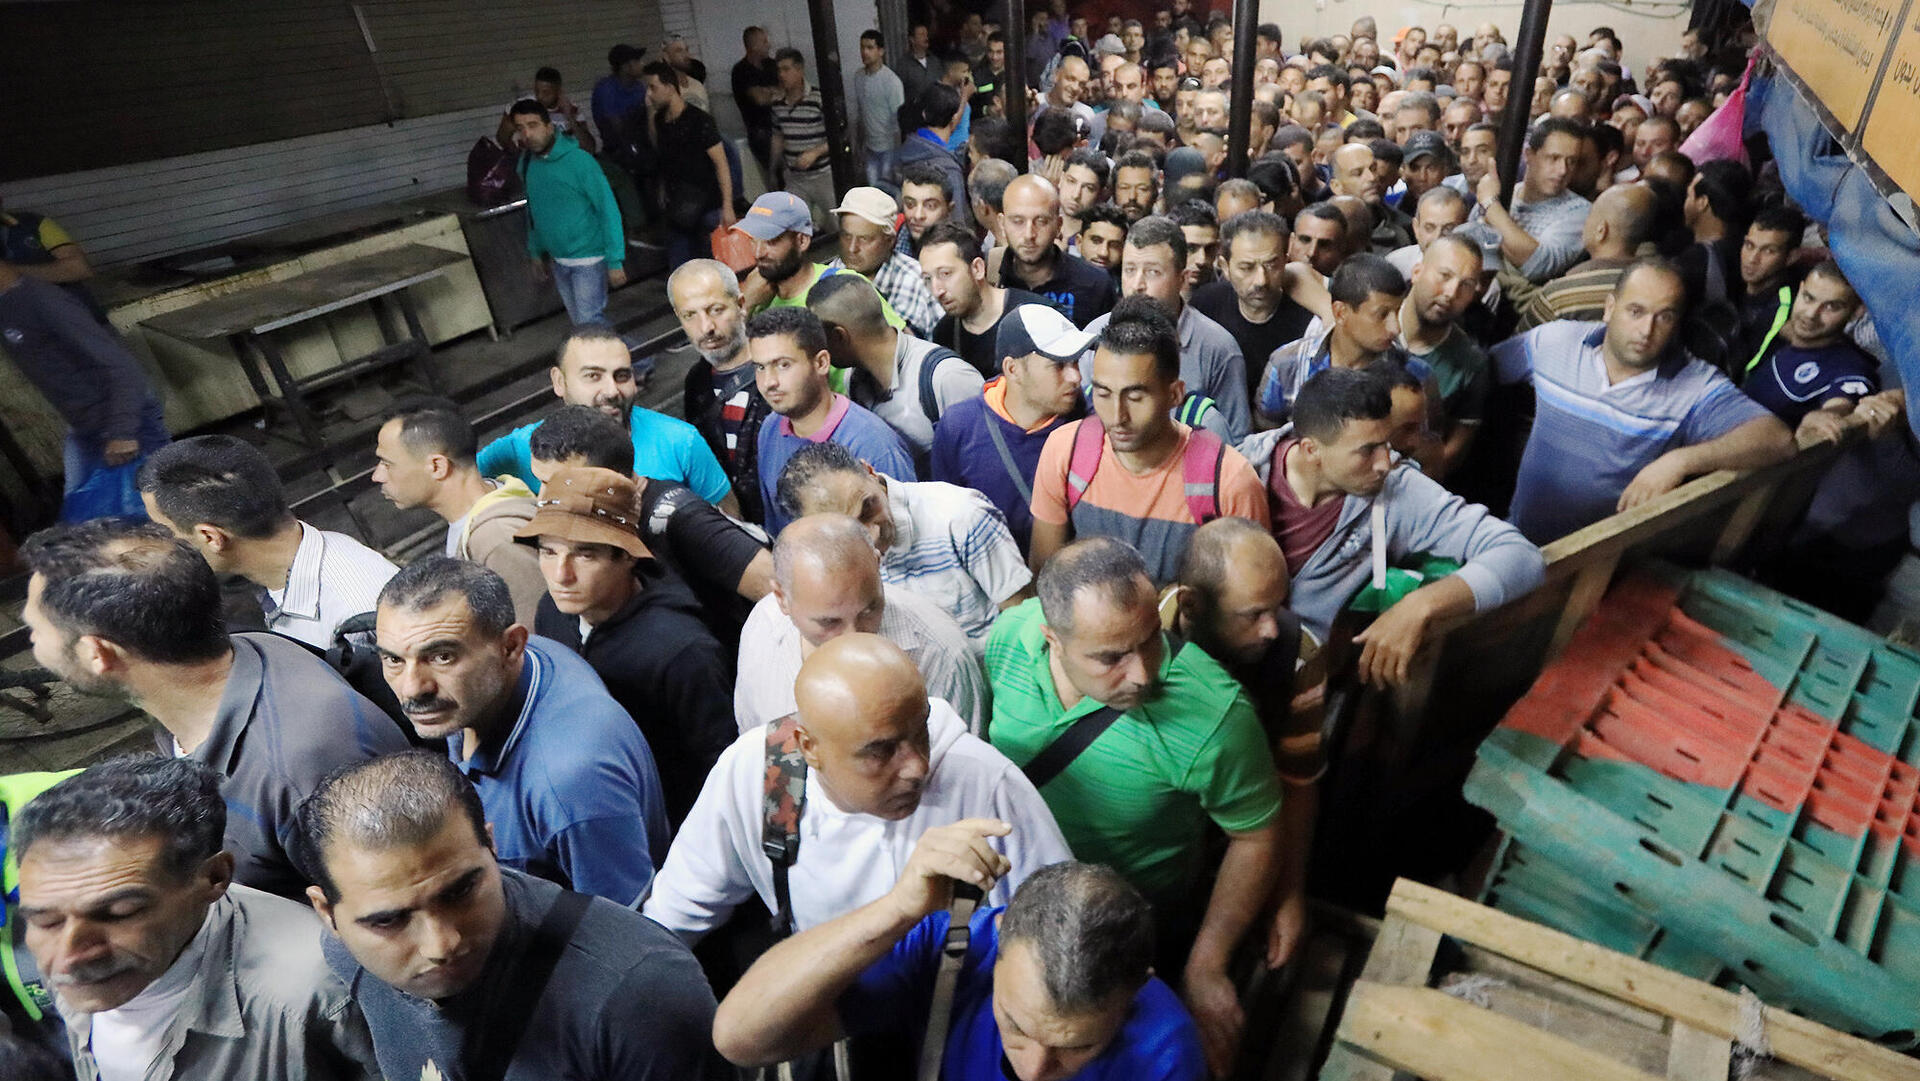 פועלים פלסטינים מהרשות במעבר הגבול אייל ליד קלקיליה בדרכם לעבוד בישראל